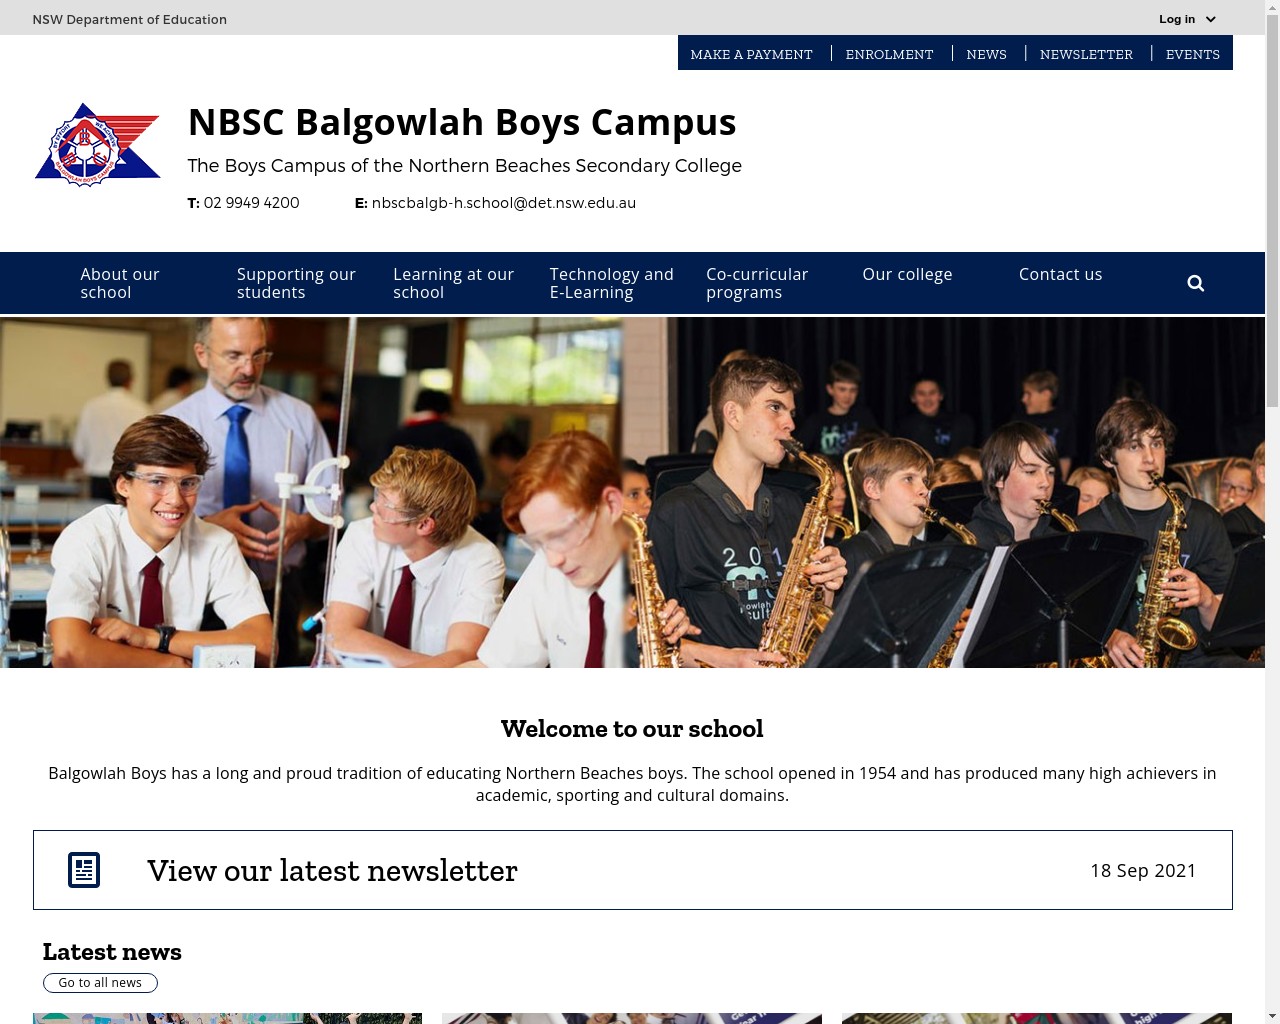 NBSC Balgowlah Boys Campus